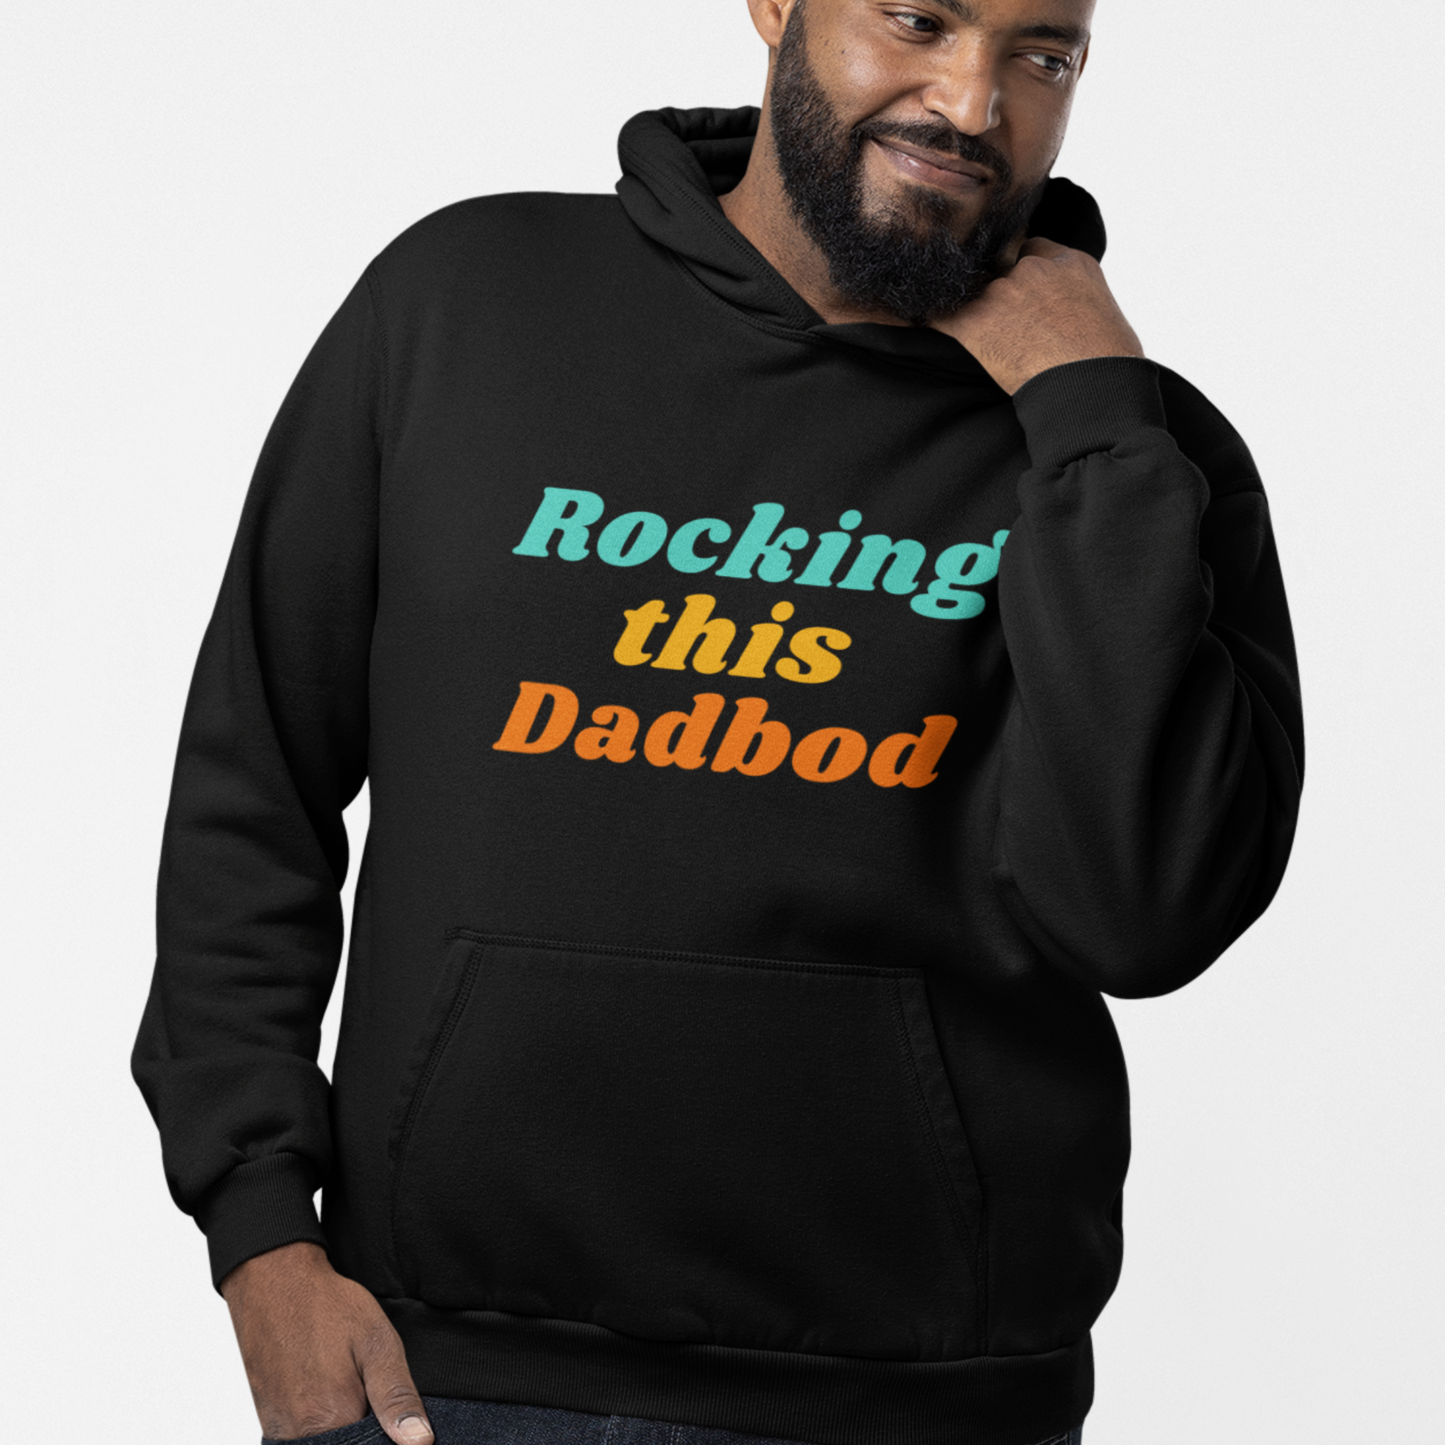 Rocking this Dadbod - Men's Hooded Sweatshirt